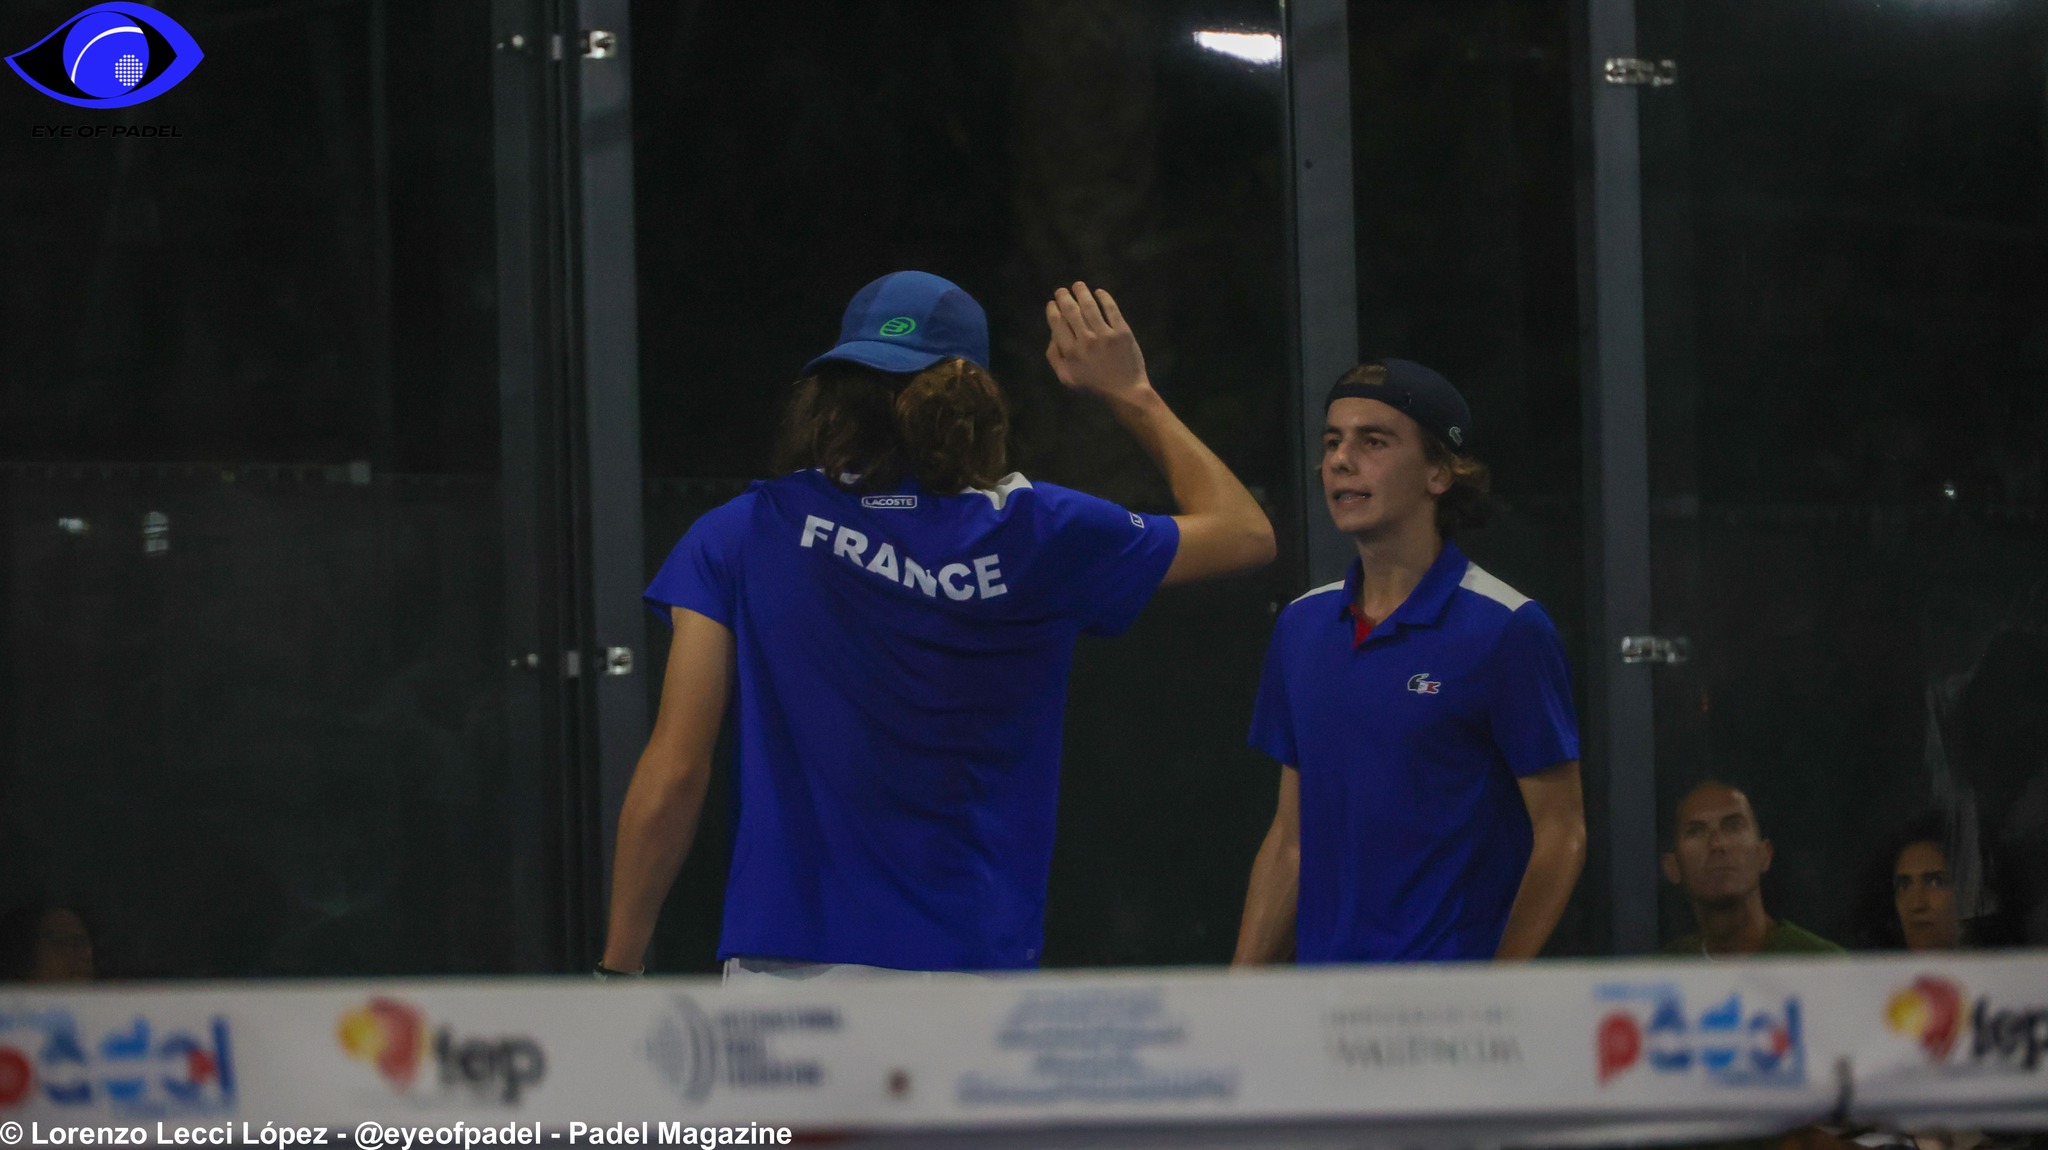 Campeonato Europeu de Juniores AO VIVO: França x Holanda (M)